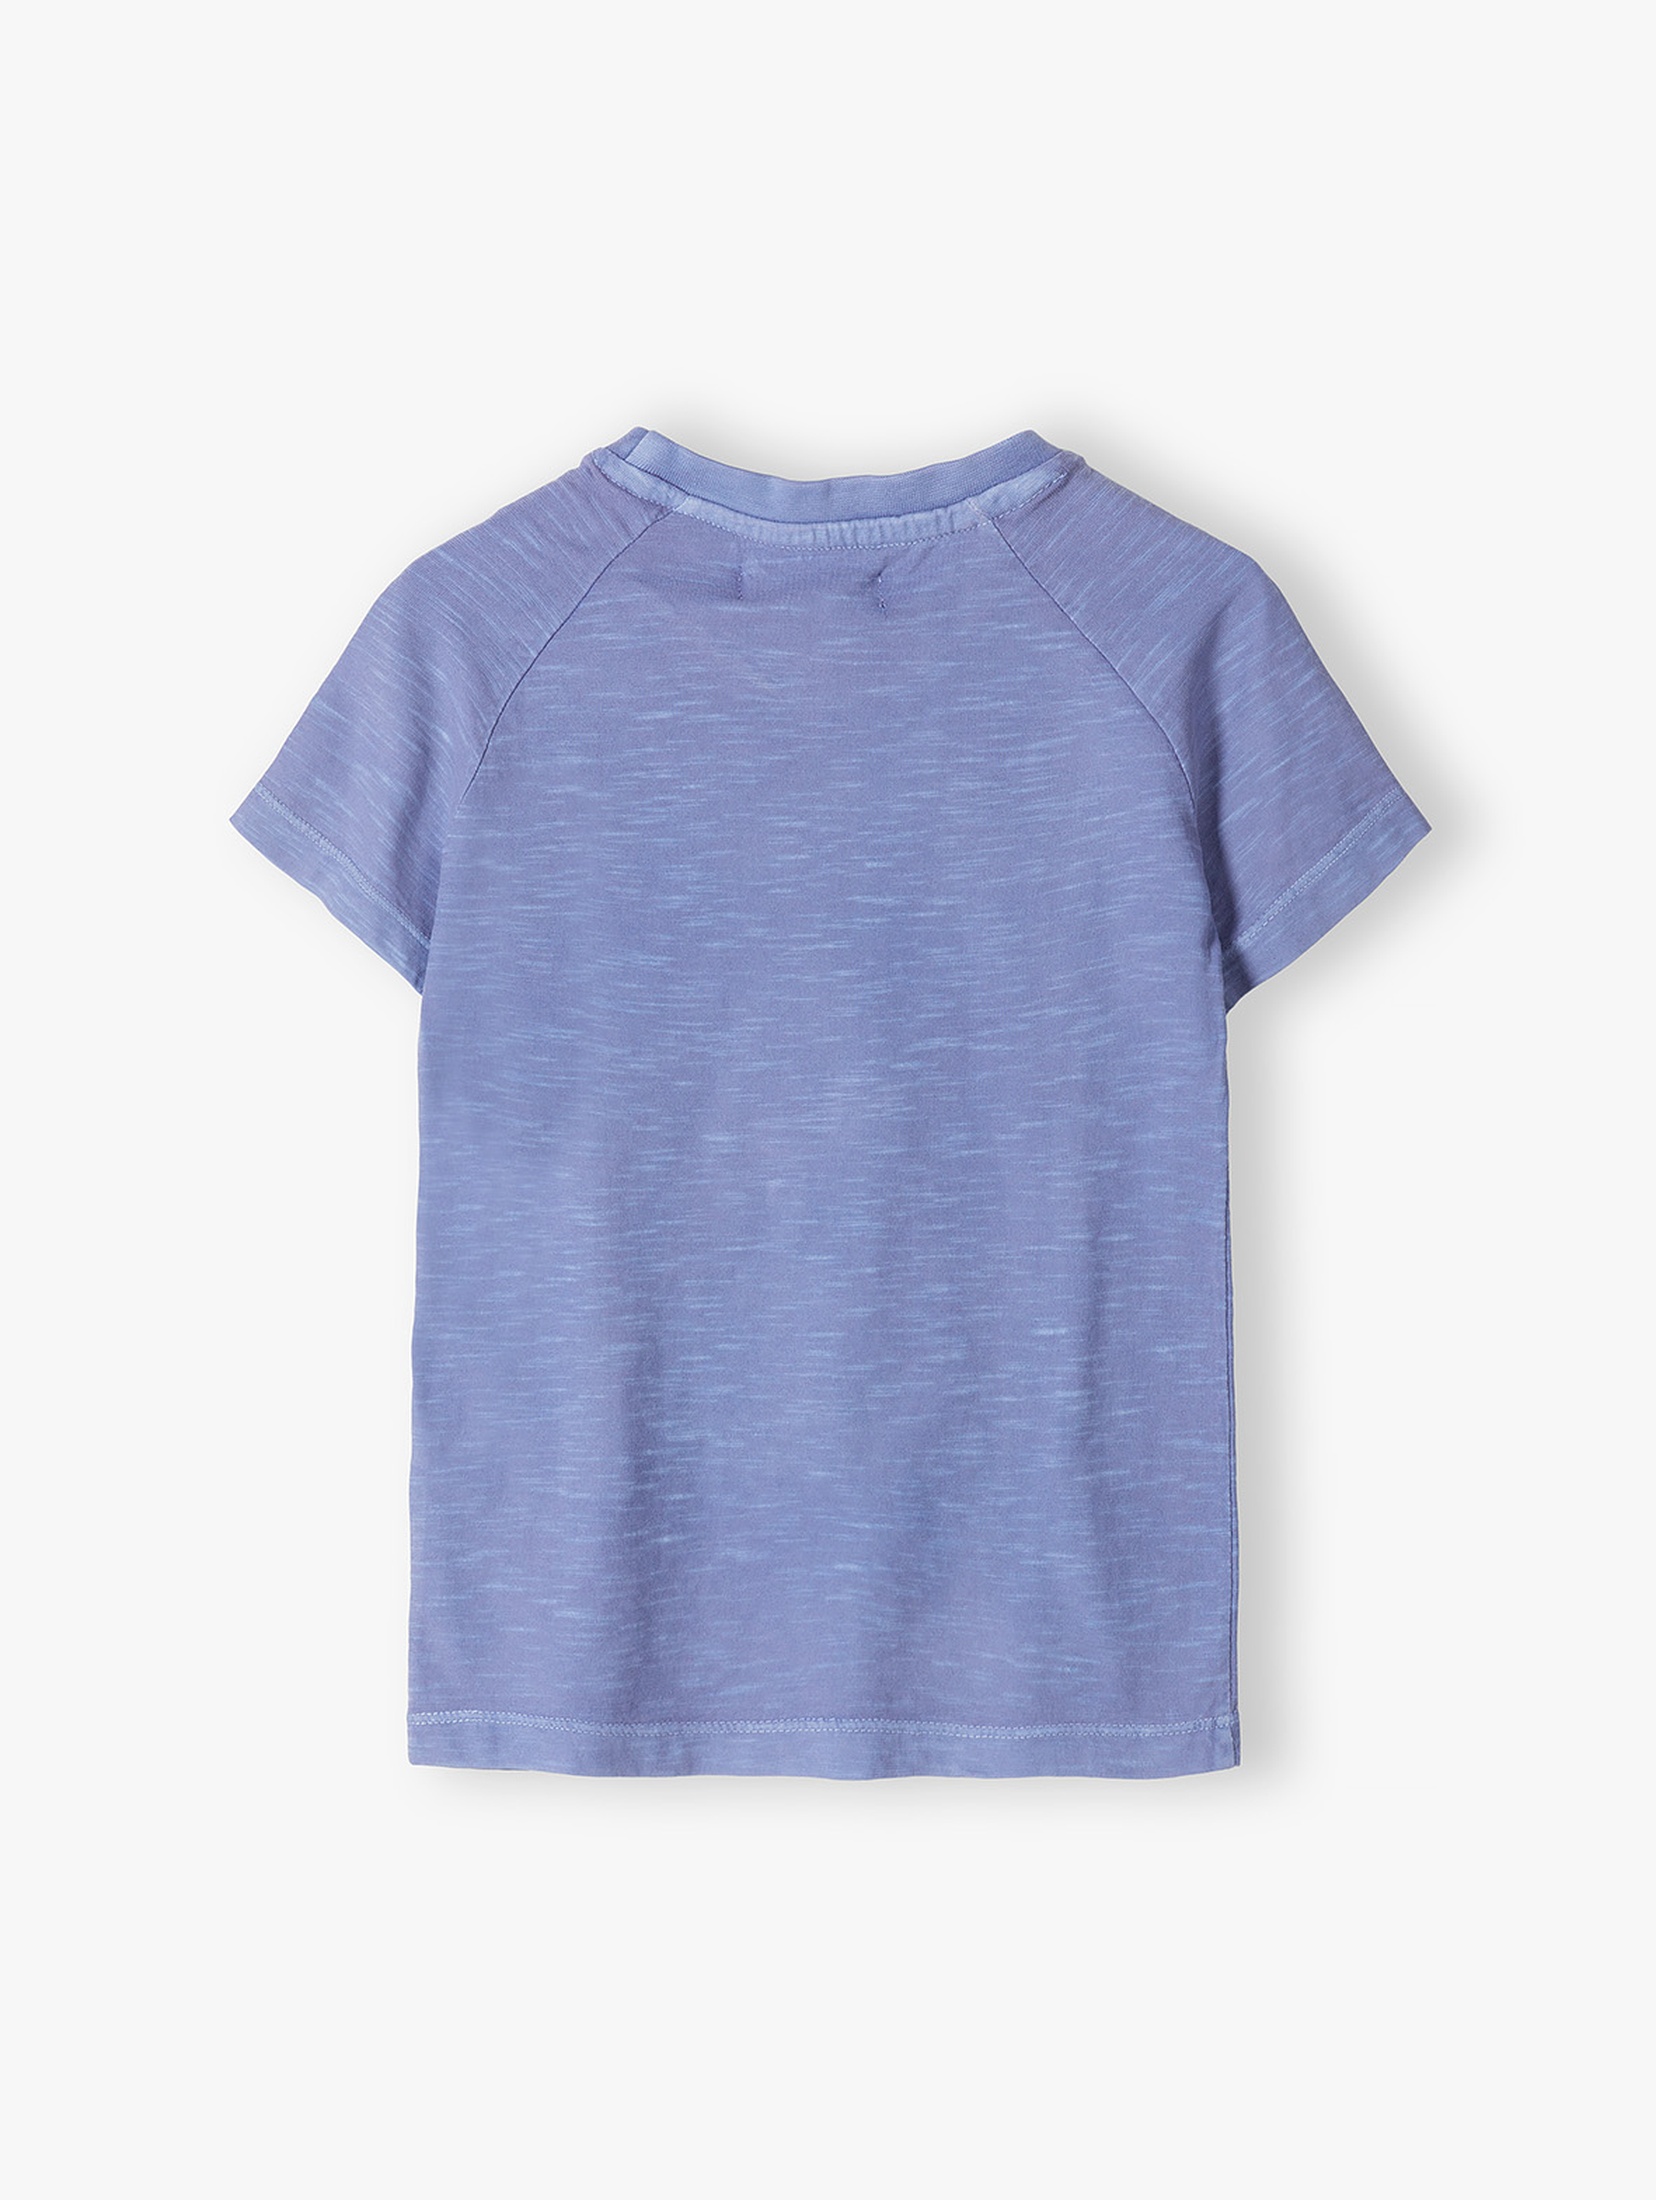 Niebieski t-shirt dla chłopca z kolorowym nadrukiem